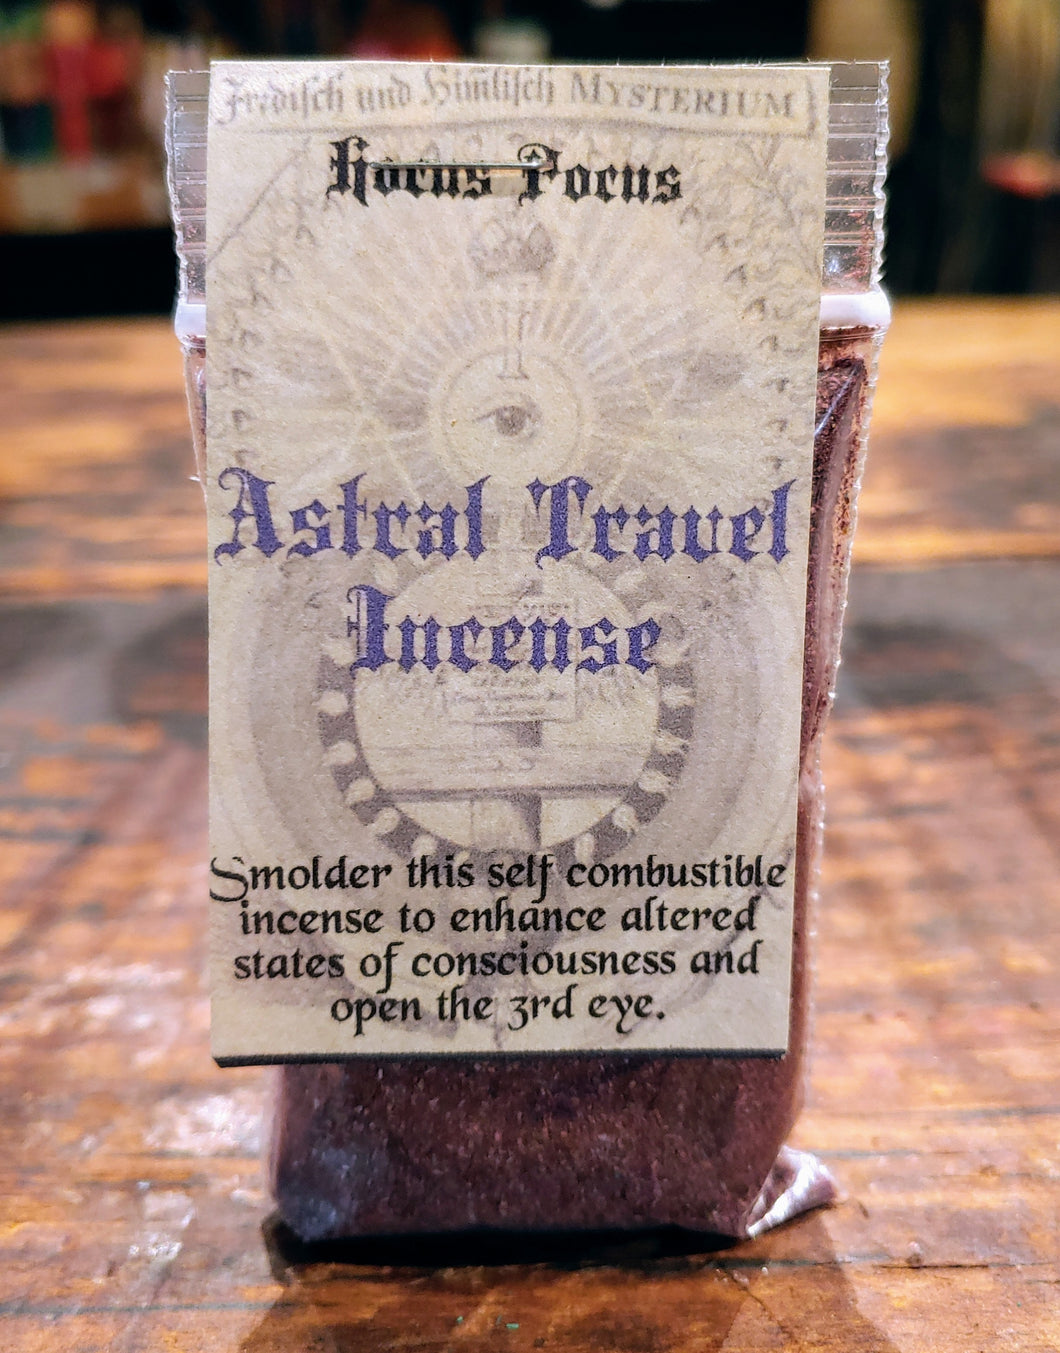 Hocus Pocus Astral Travel Incense